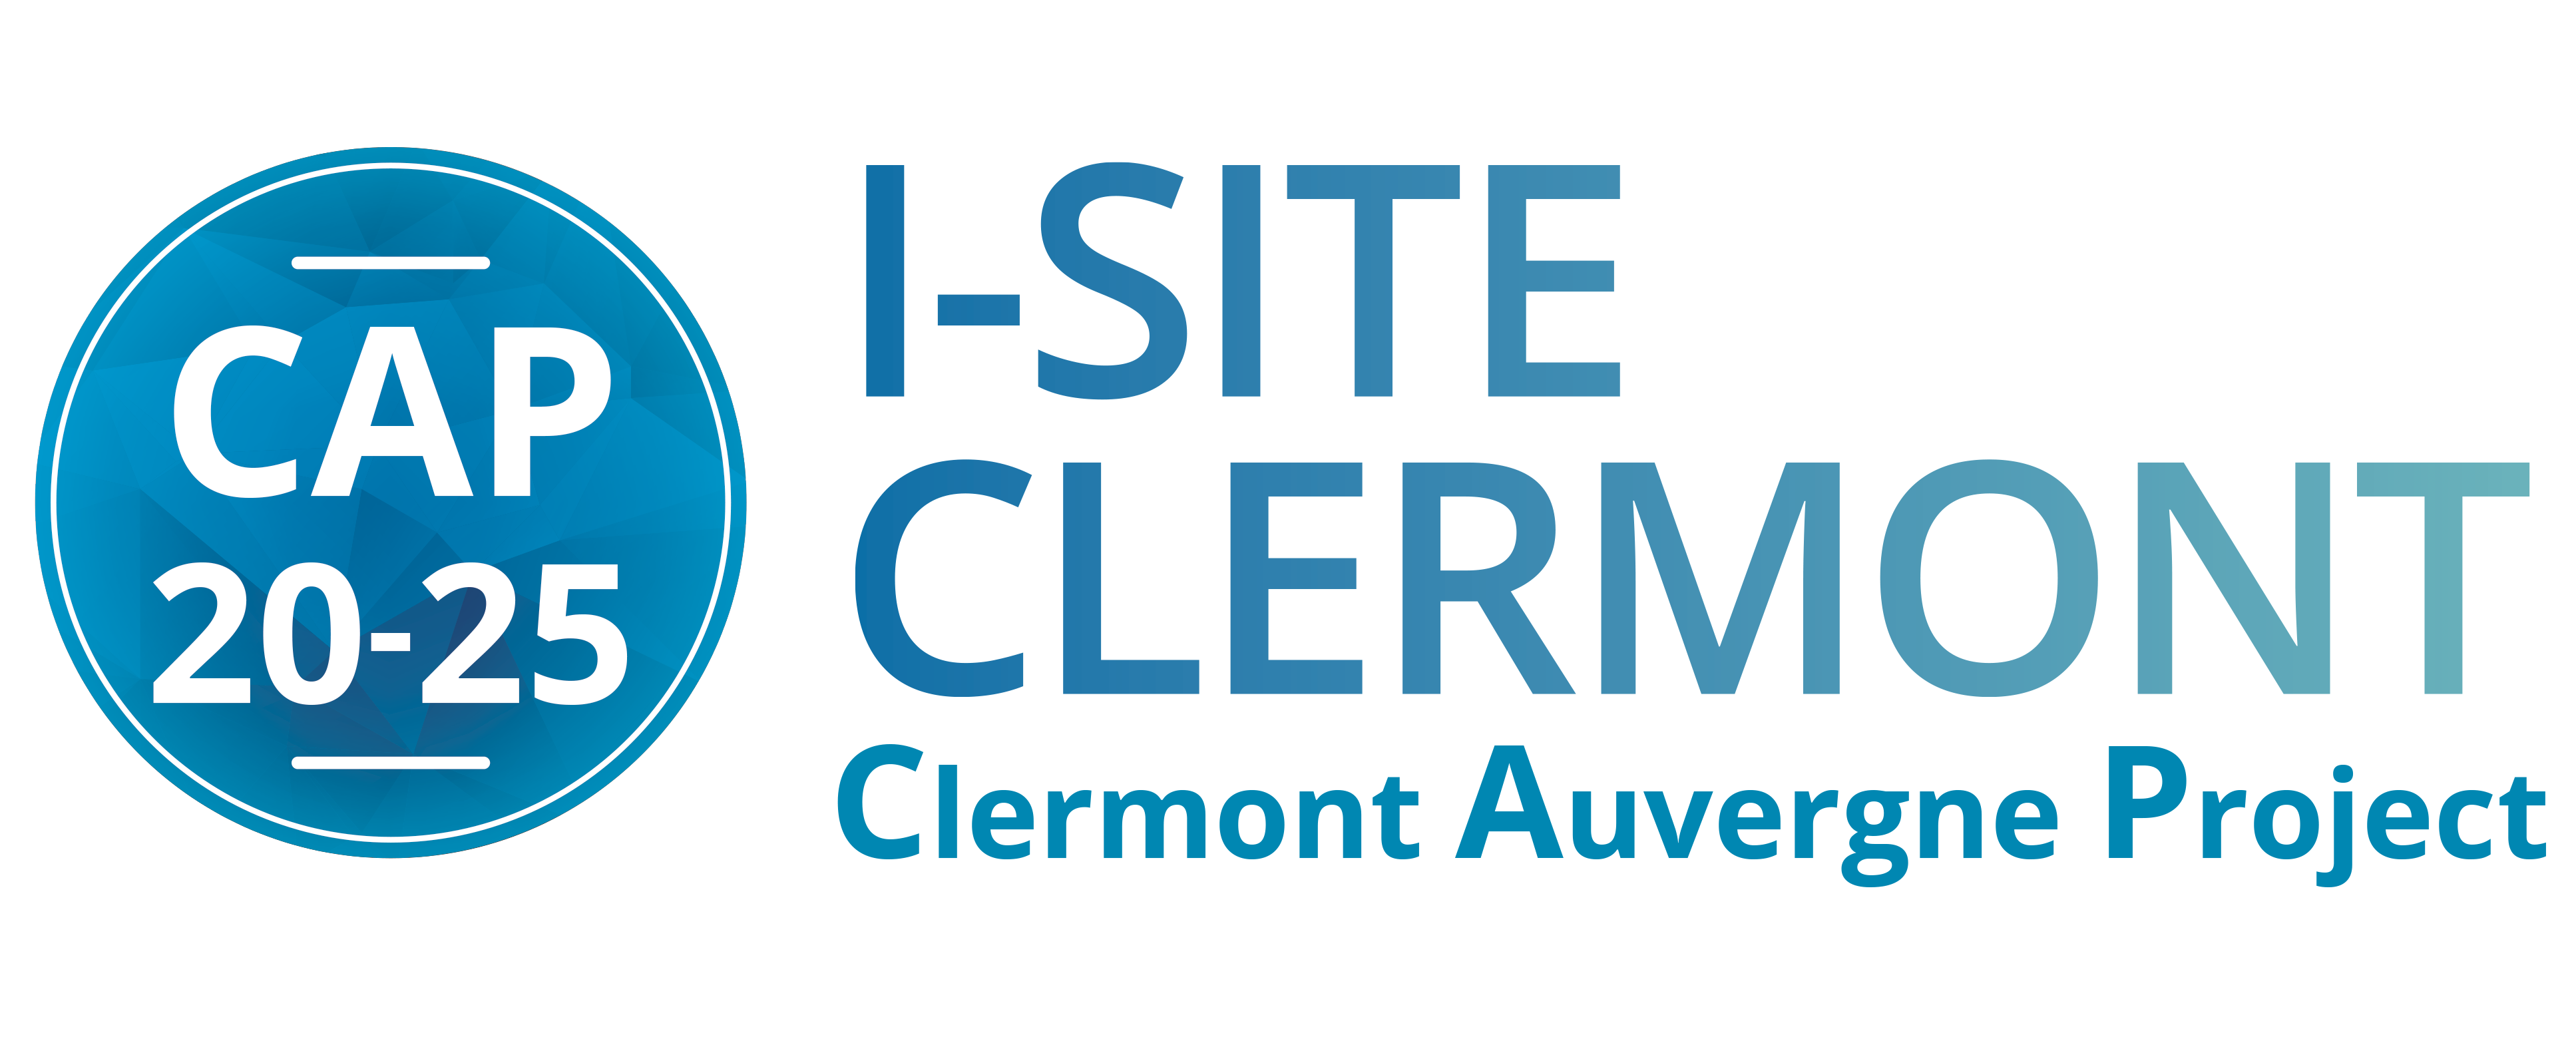 CAP 2025 I-Site Clermont